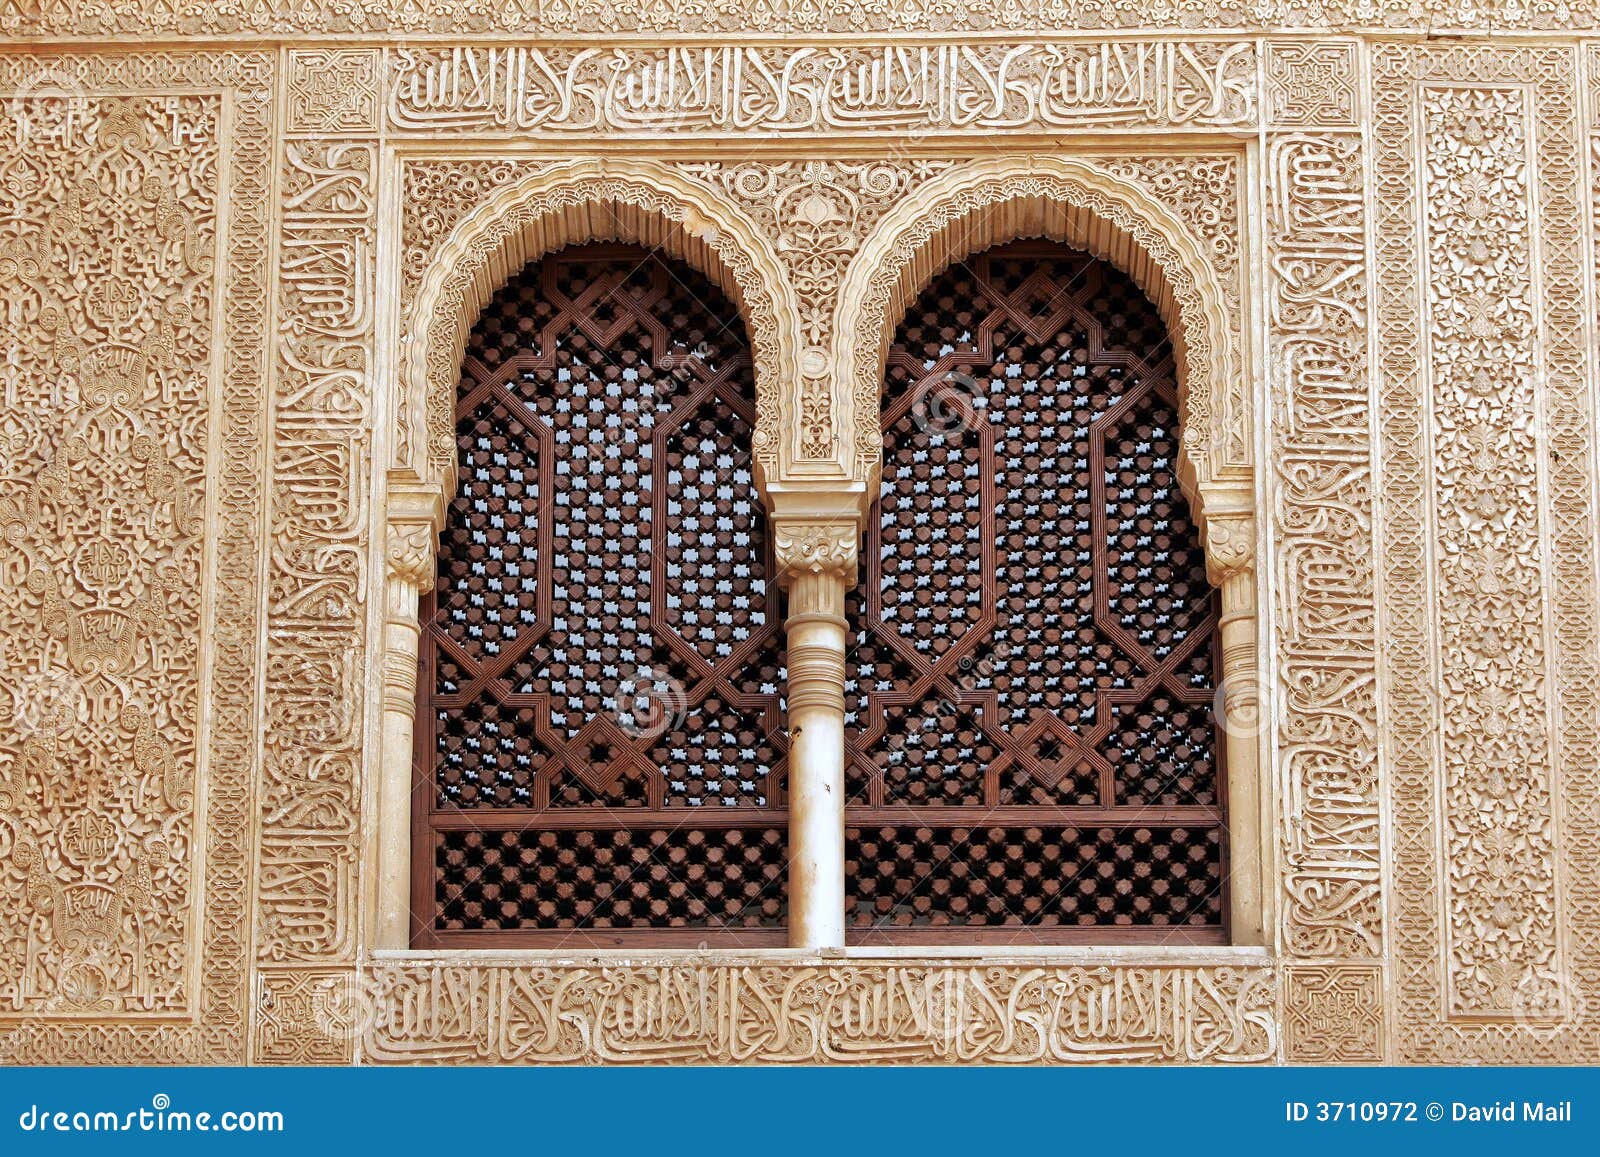 windows of alhambra, granada - andalucia, spain